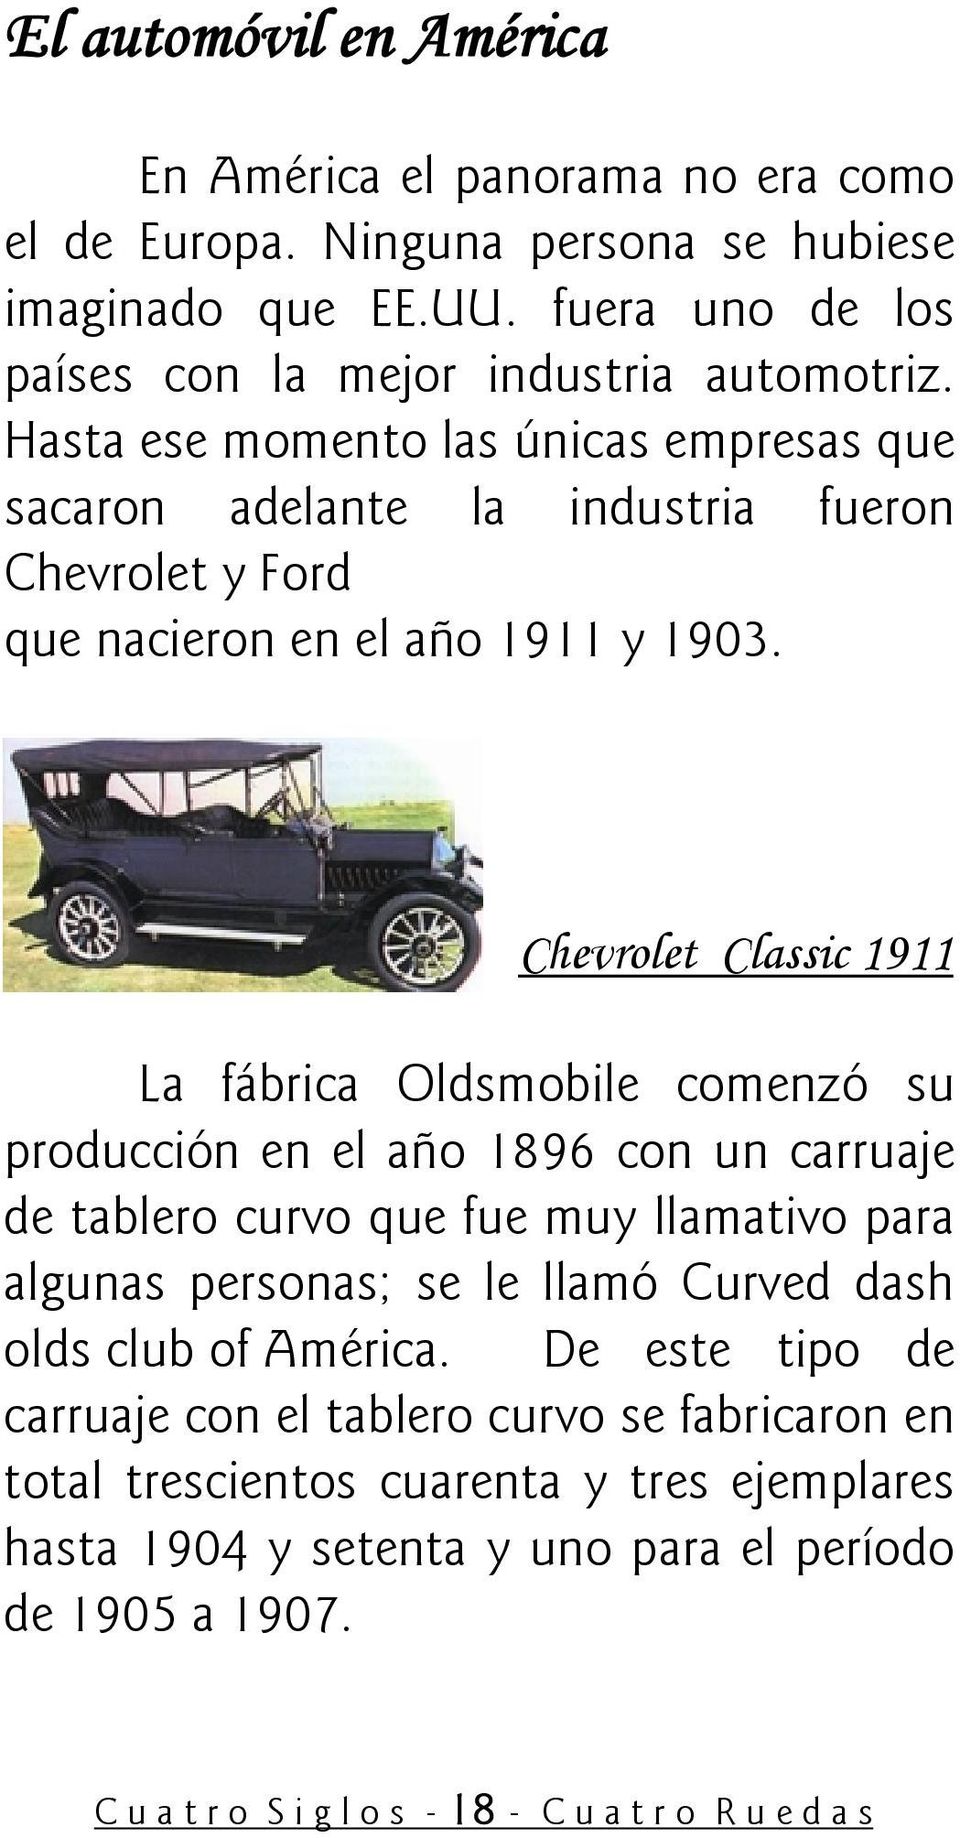 Chevrolet Classic 1911 La fábrica Oldsmobile comenzó su producción en el año 1896 con un carruaje de tablero curvo que fue muy llamativo para algunas personas; se le llamó Curved dash